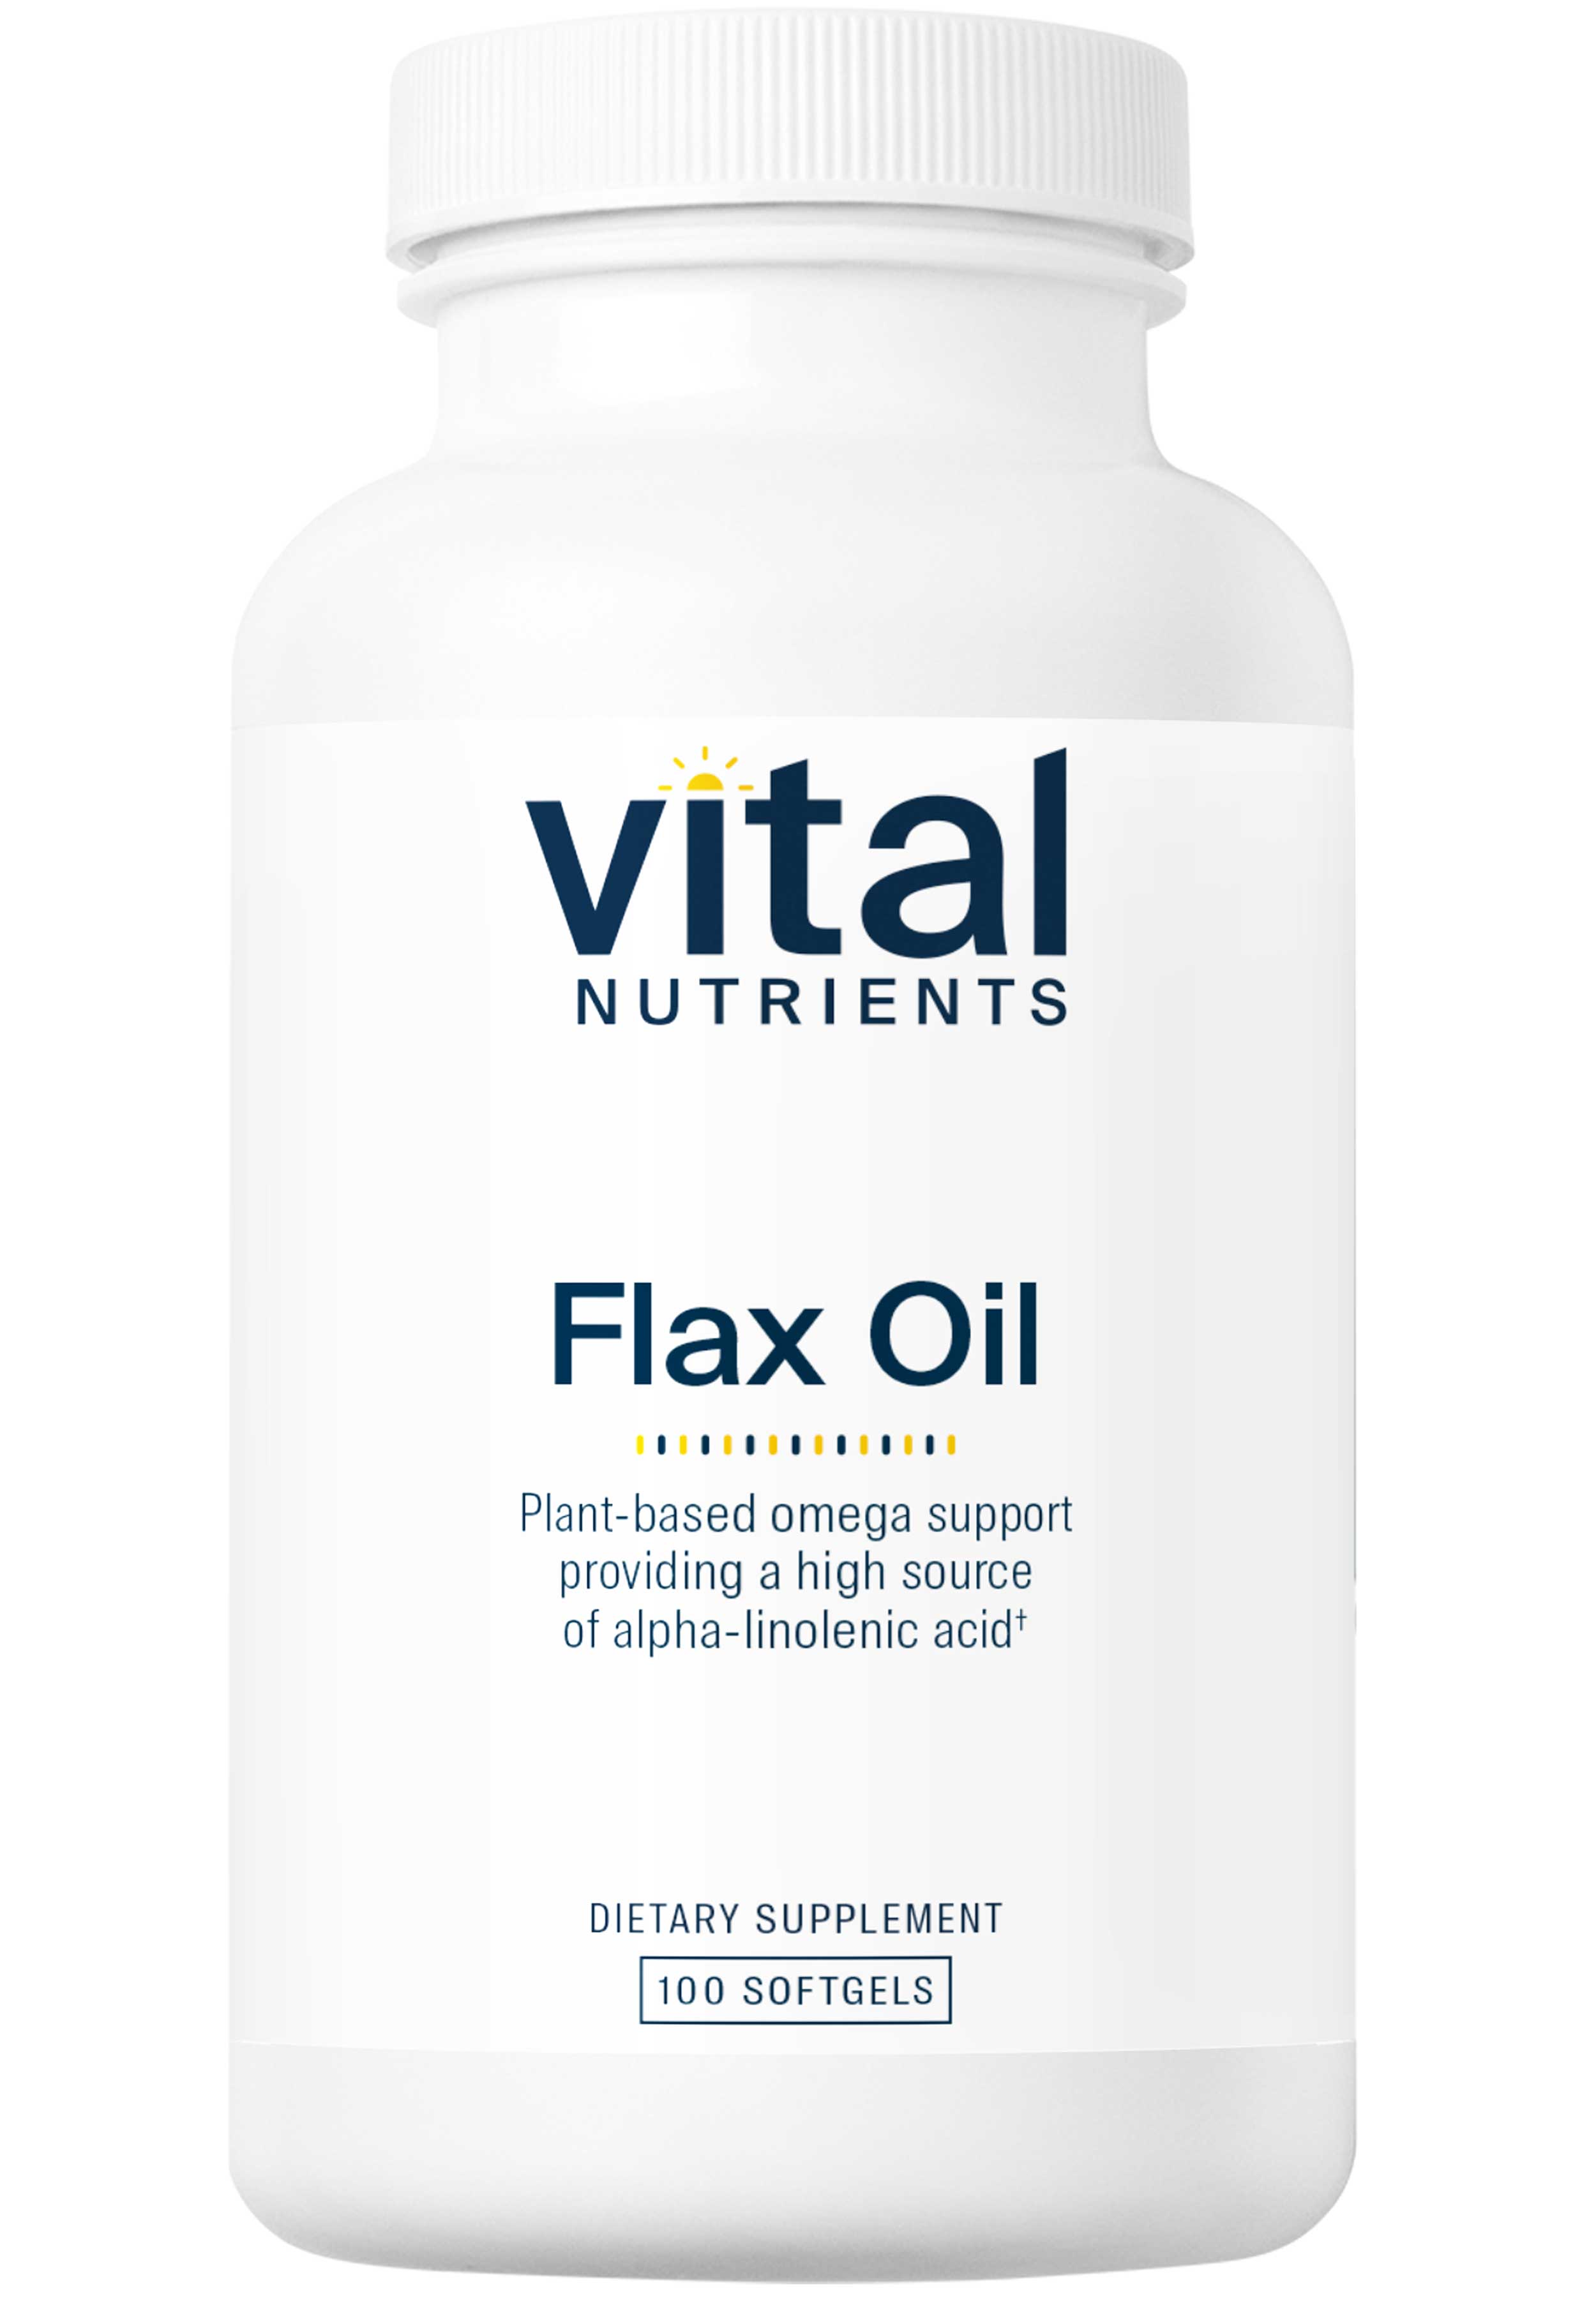 Vital Nutrients Flax Oil